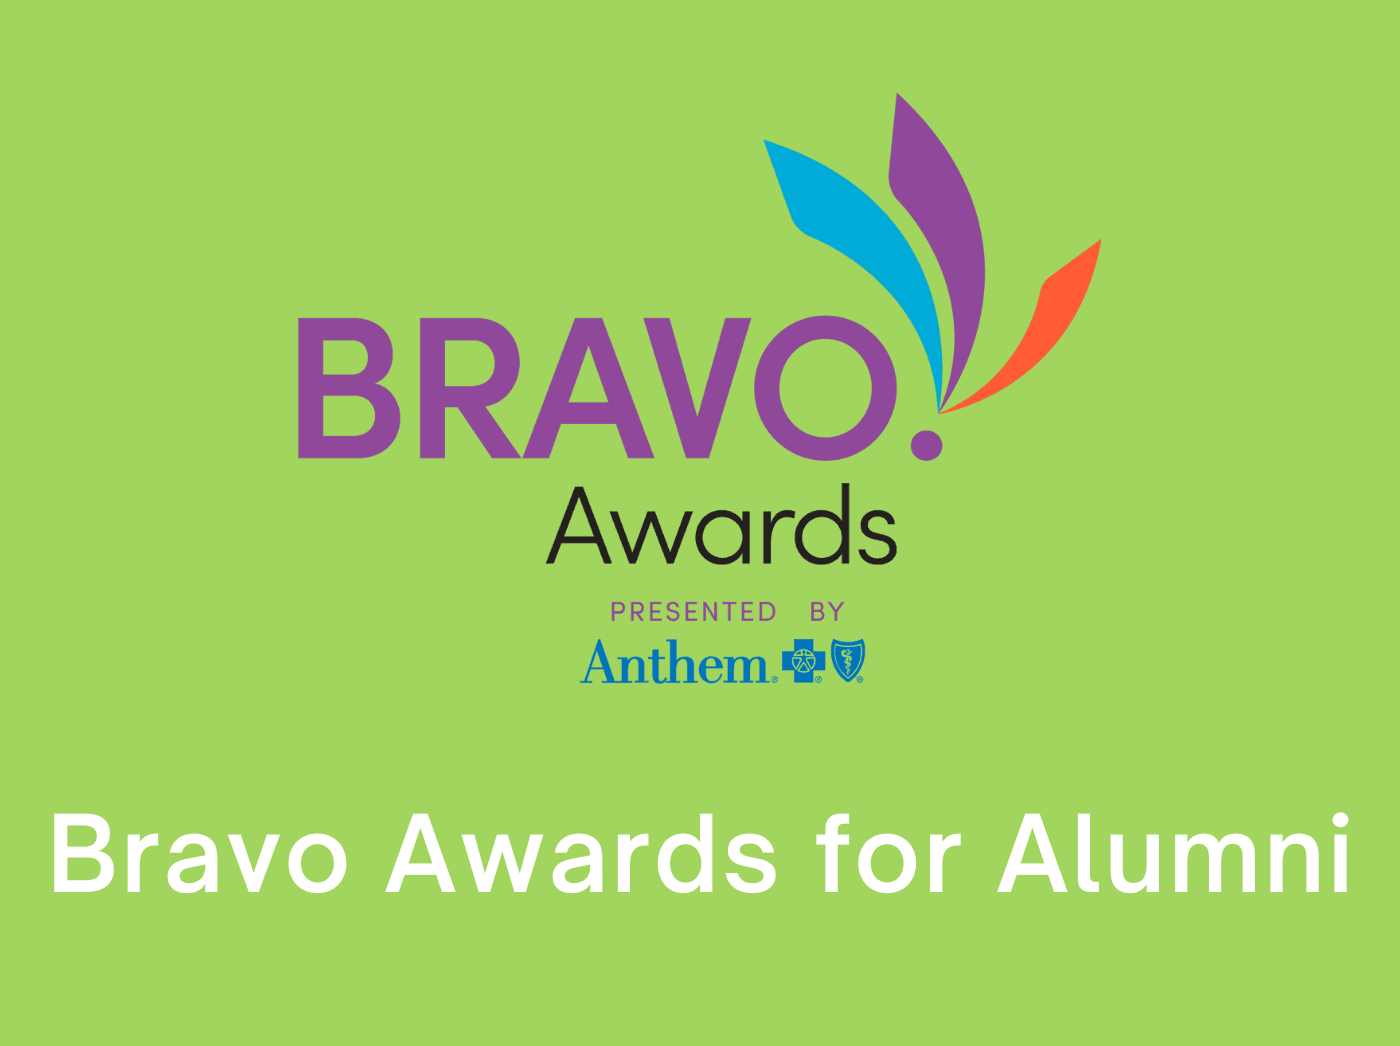 Bravo Awards for Alumni